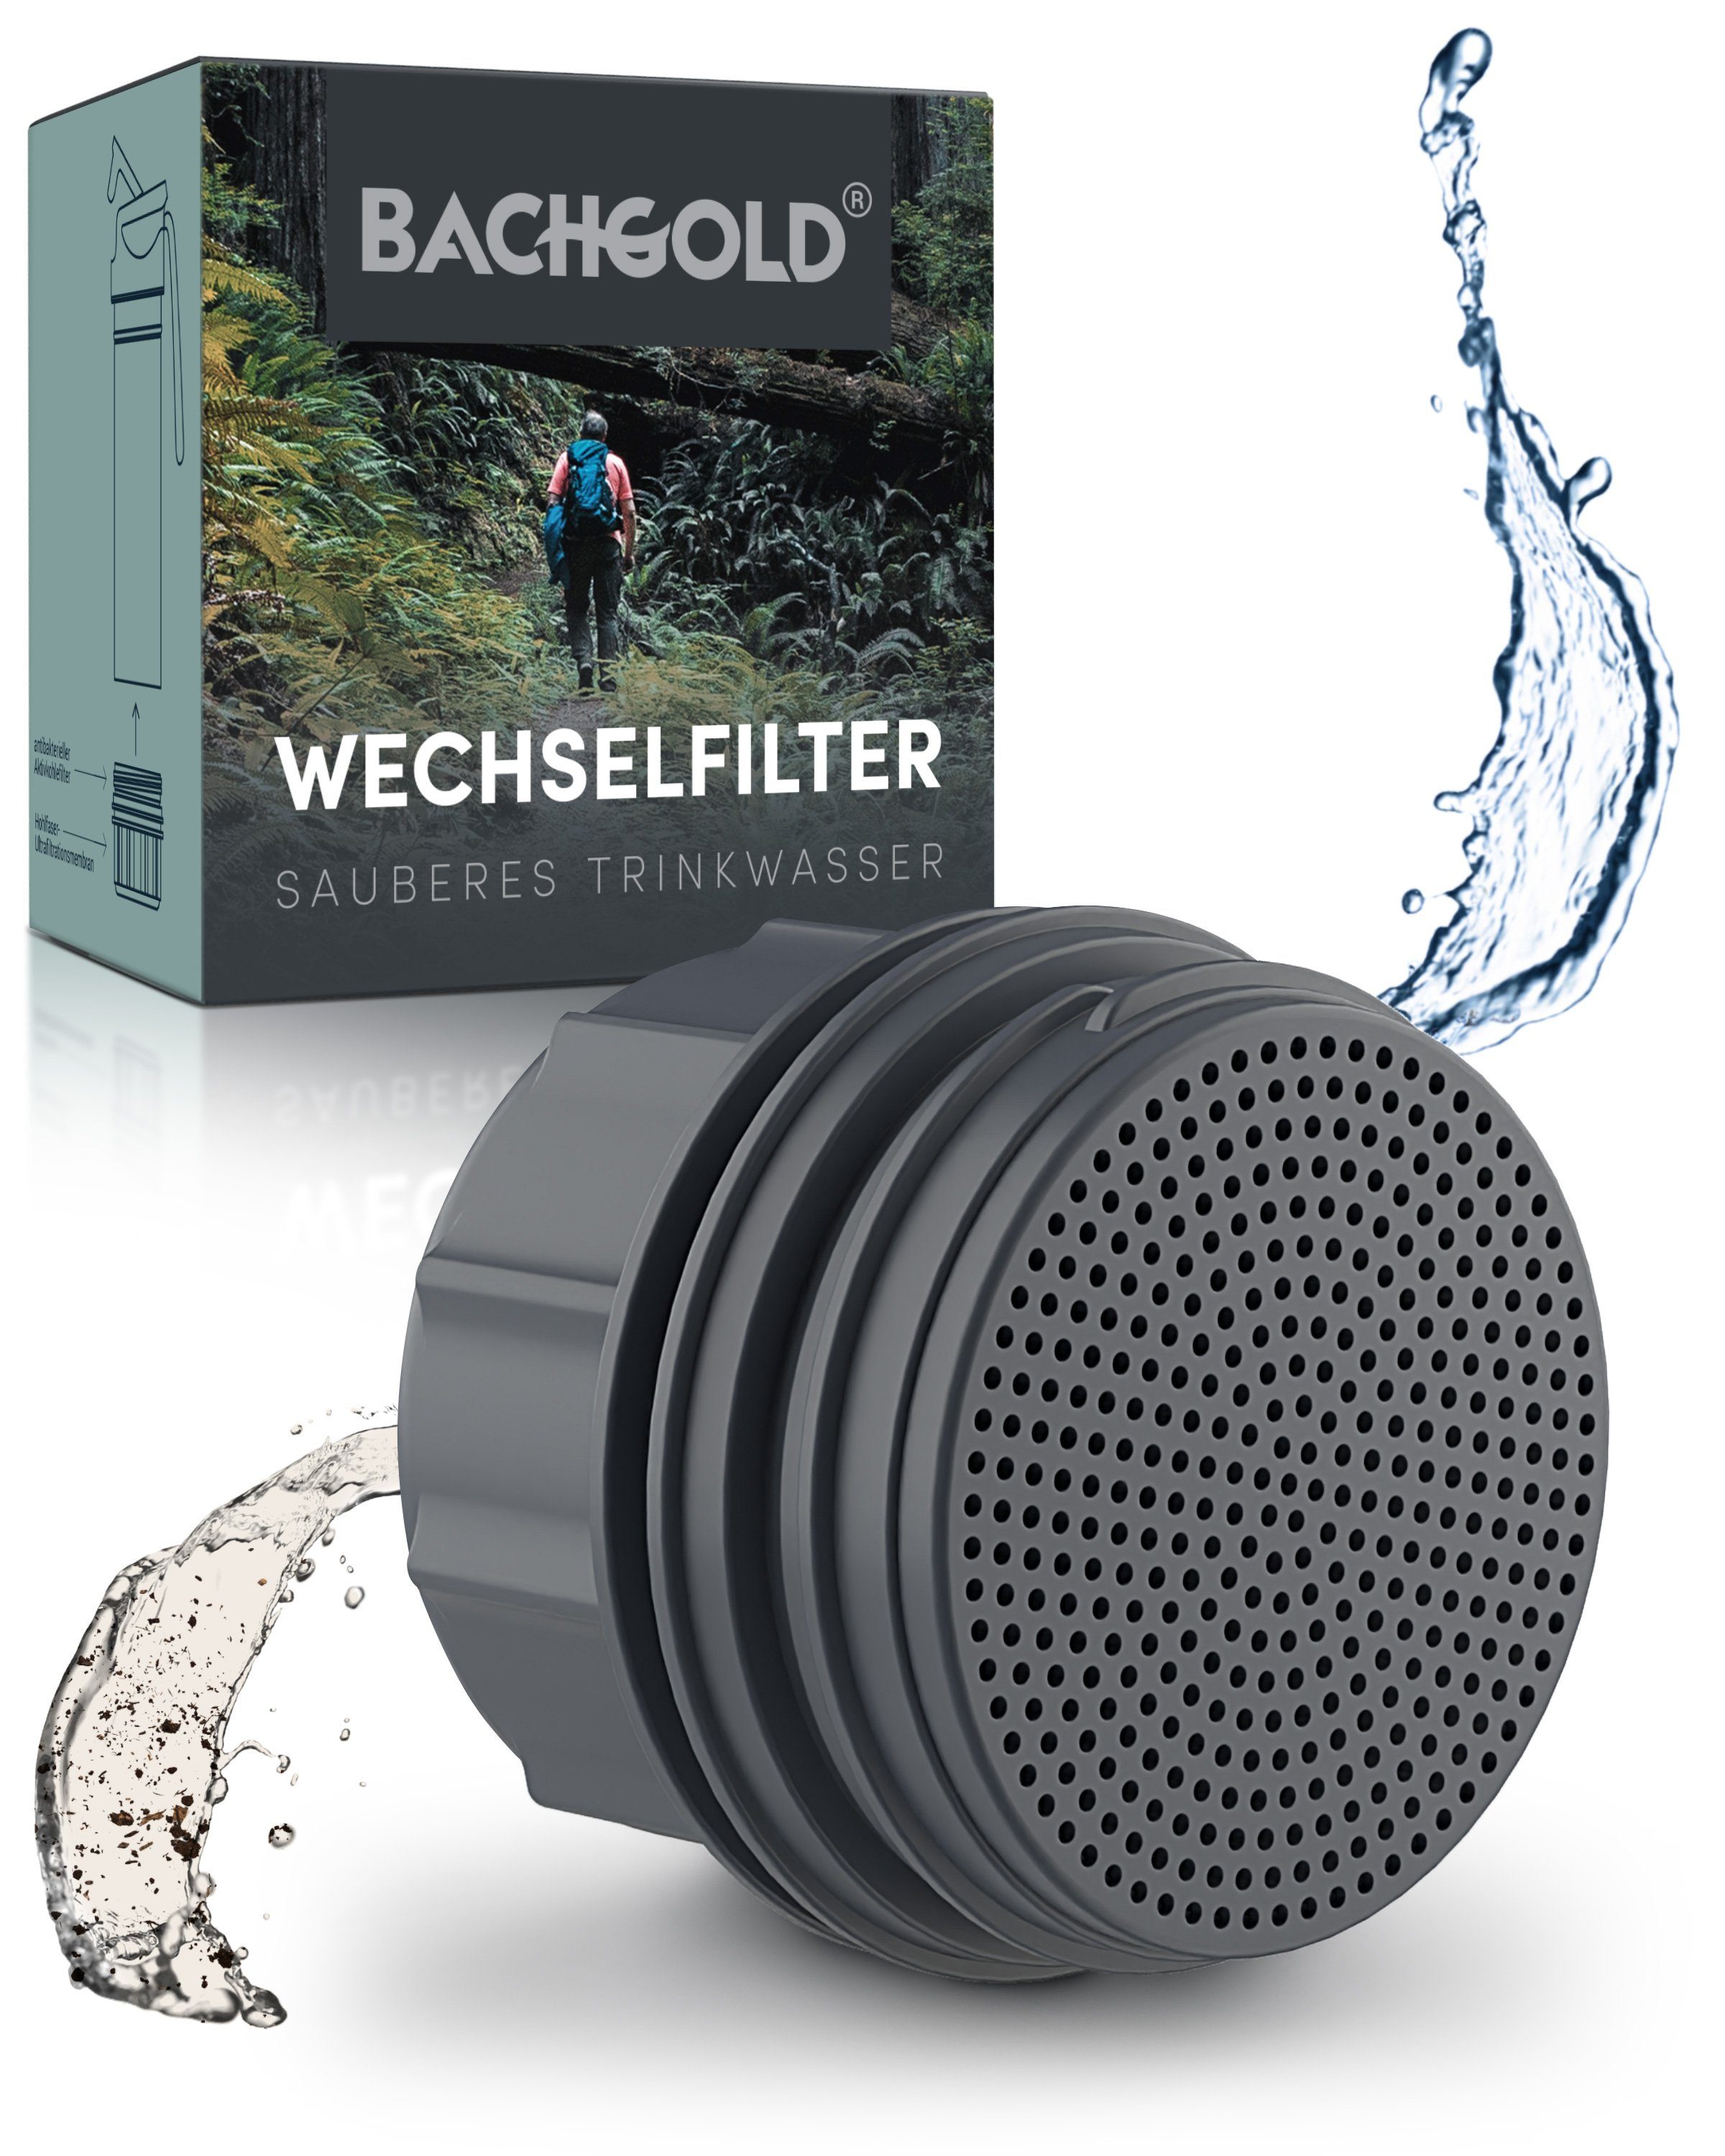 BACHGOLD Wasserfilter Bachgold® Wechselfilter mit 1500L Filterkapazität, Saubere Trinkwasser innerhalb weniger Sekunden